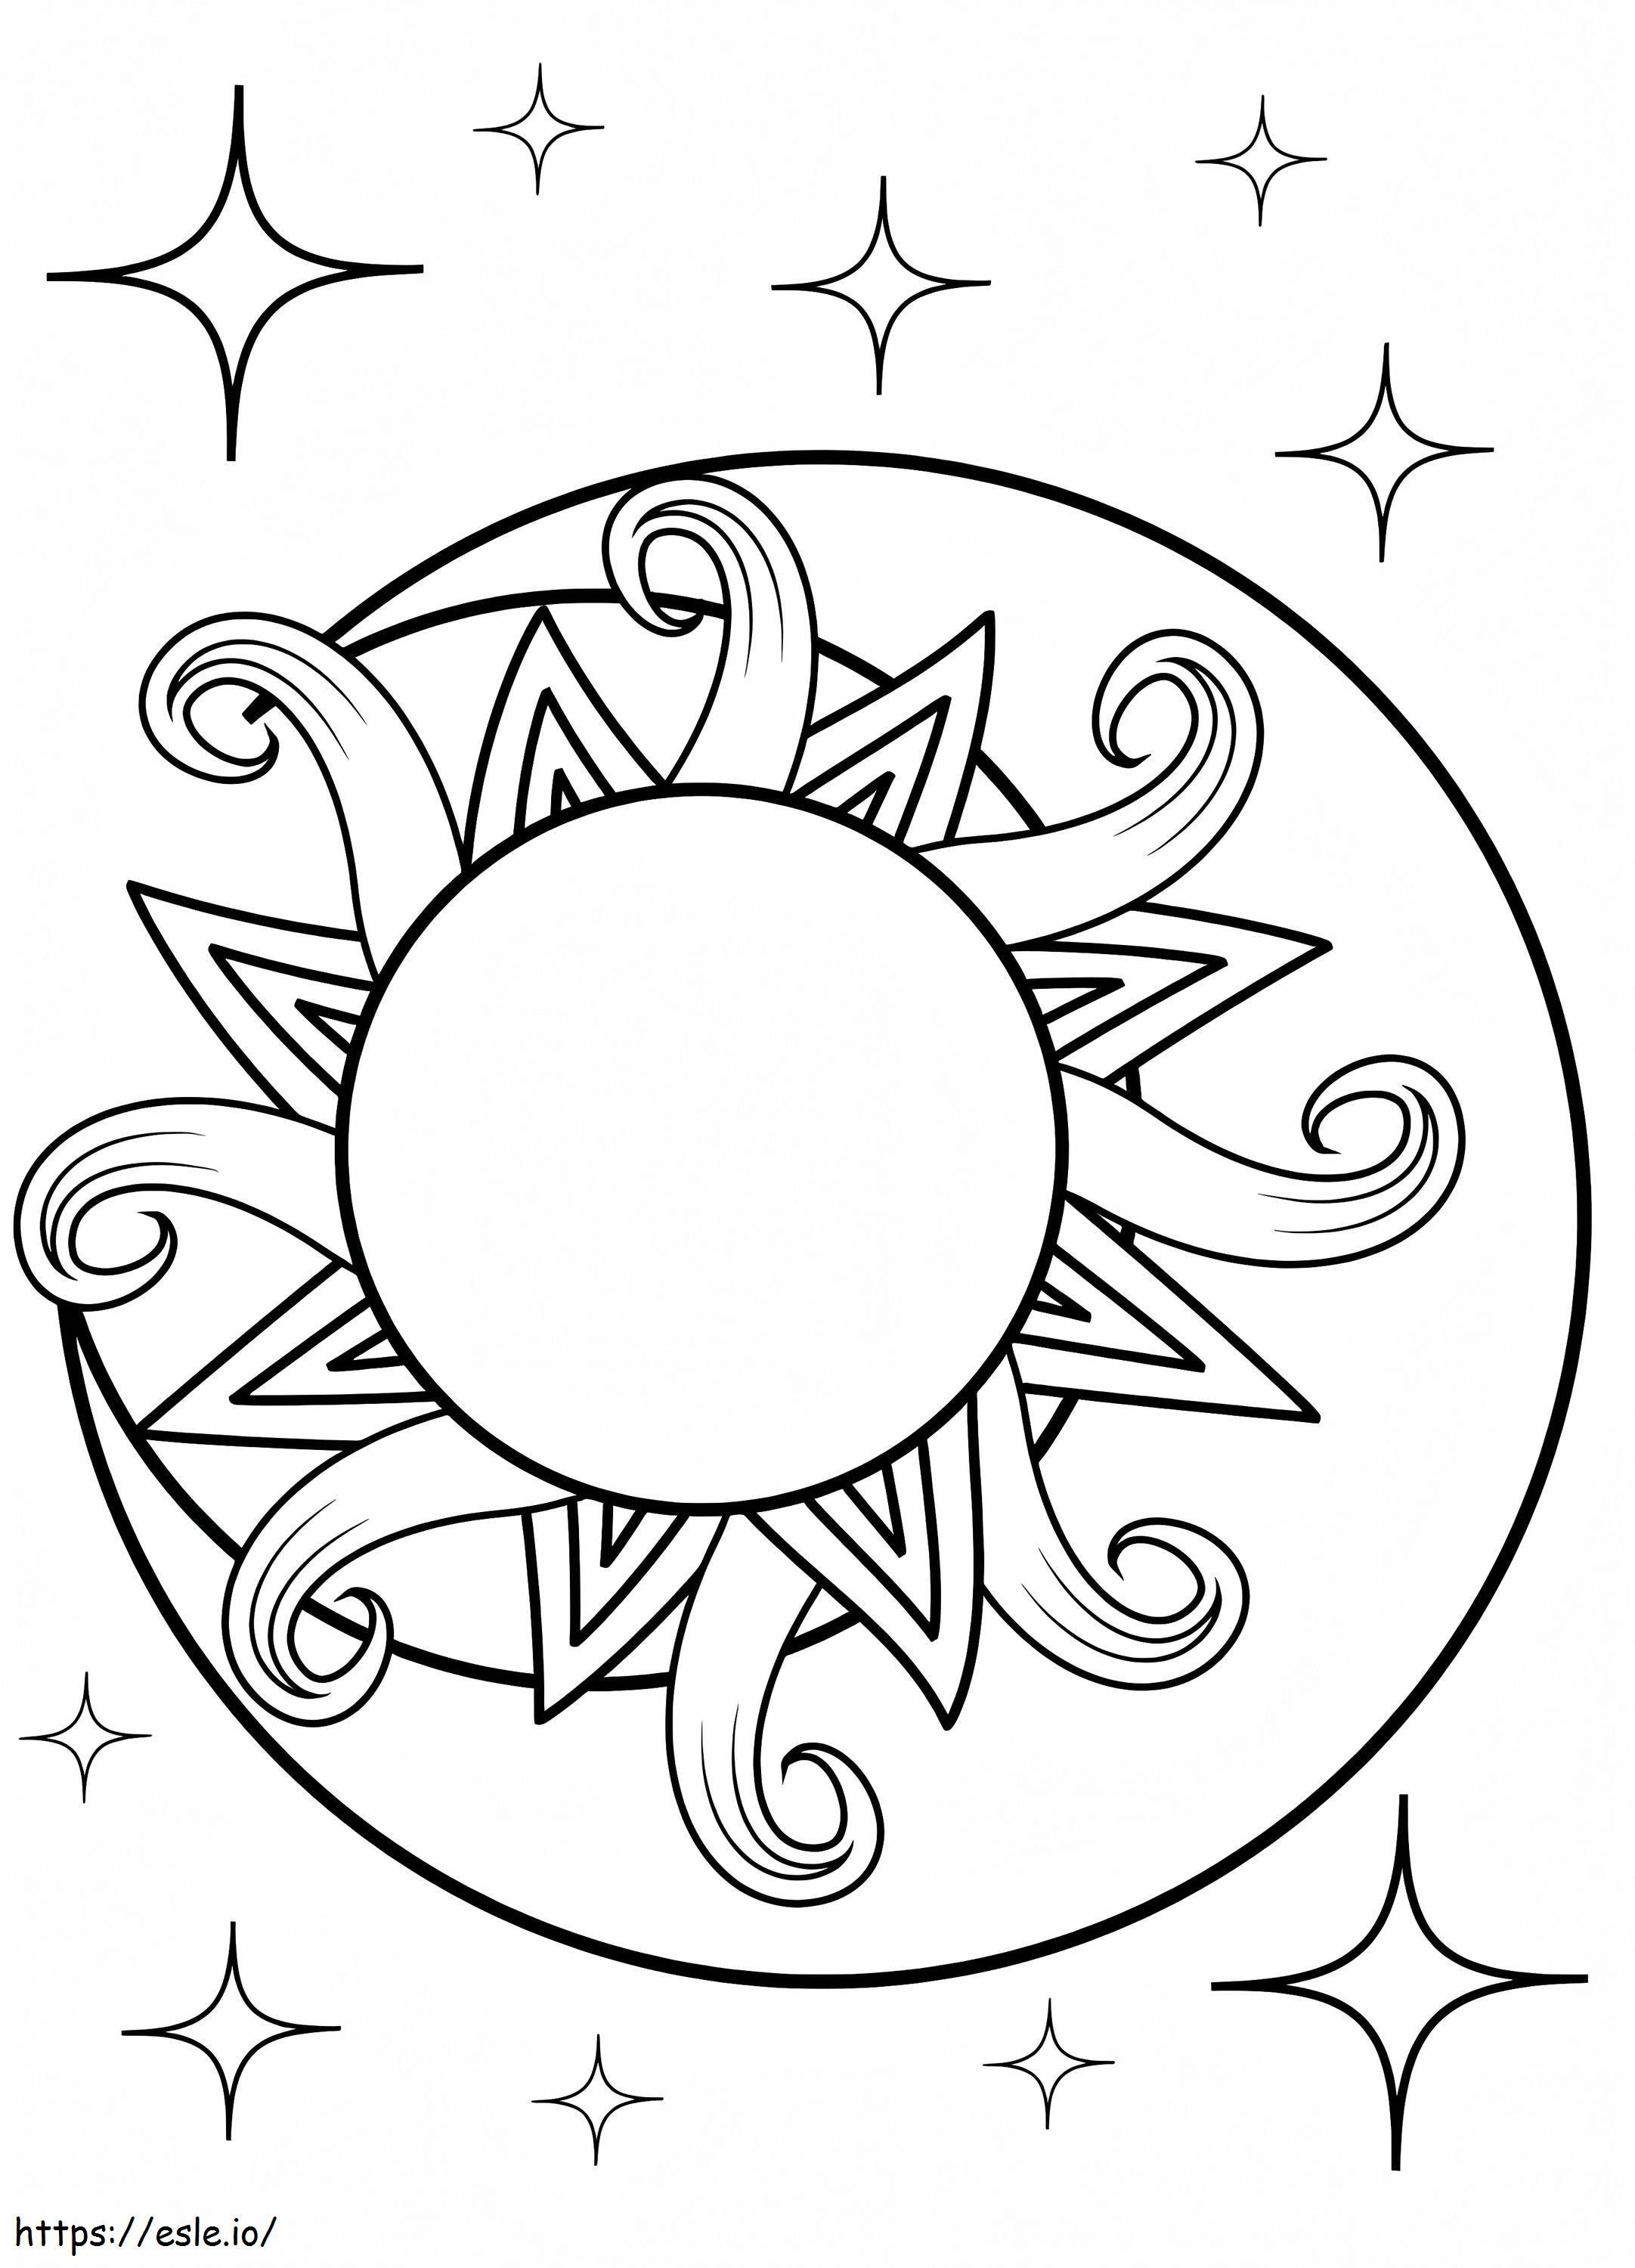 Imprimible Gratis Sol y Luna para colorear